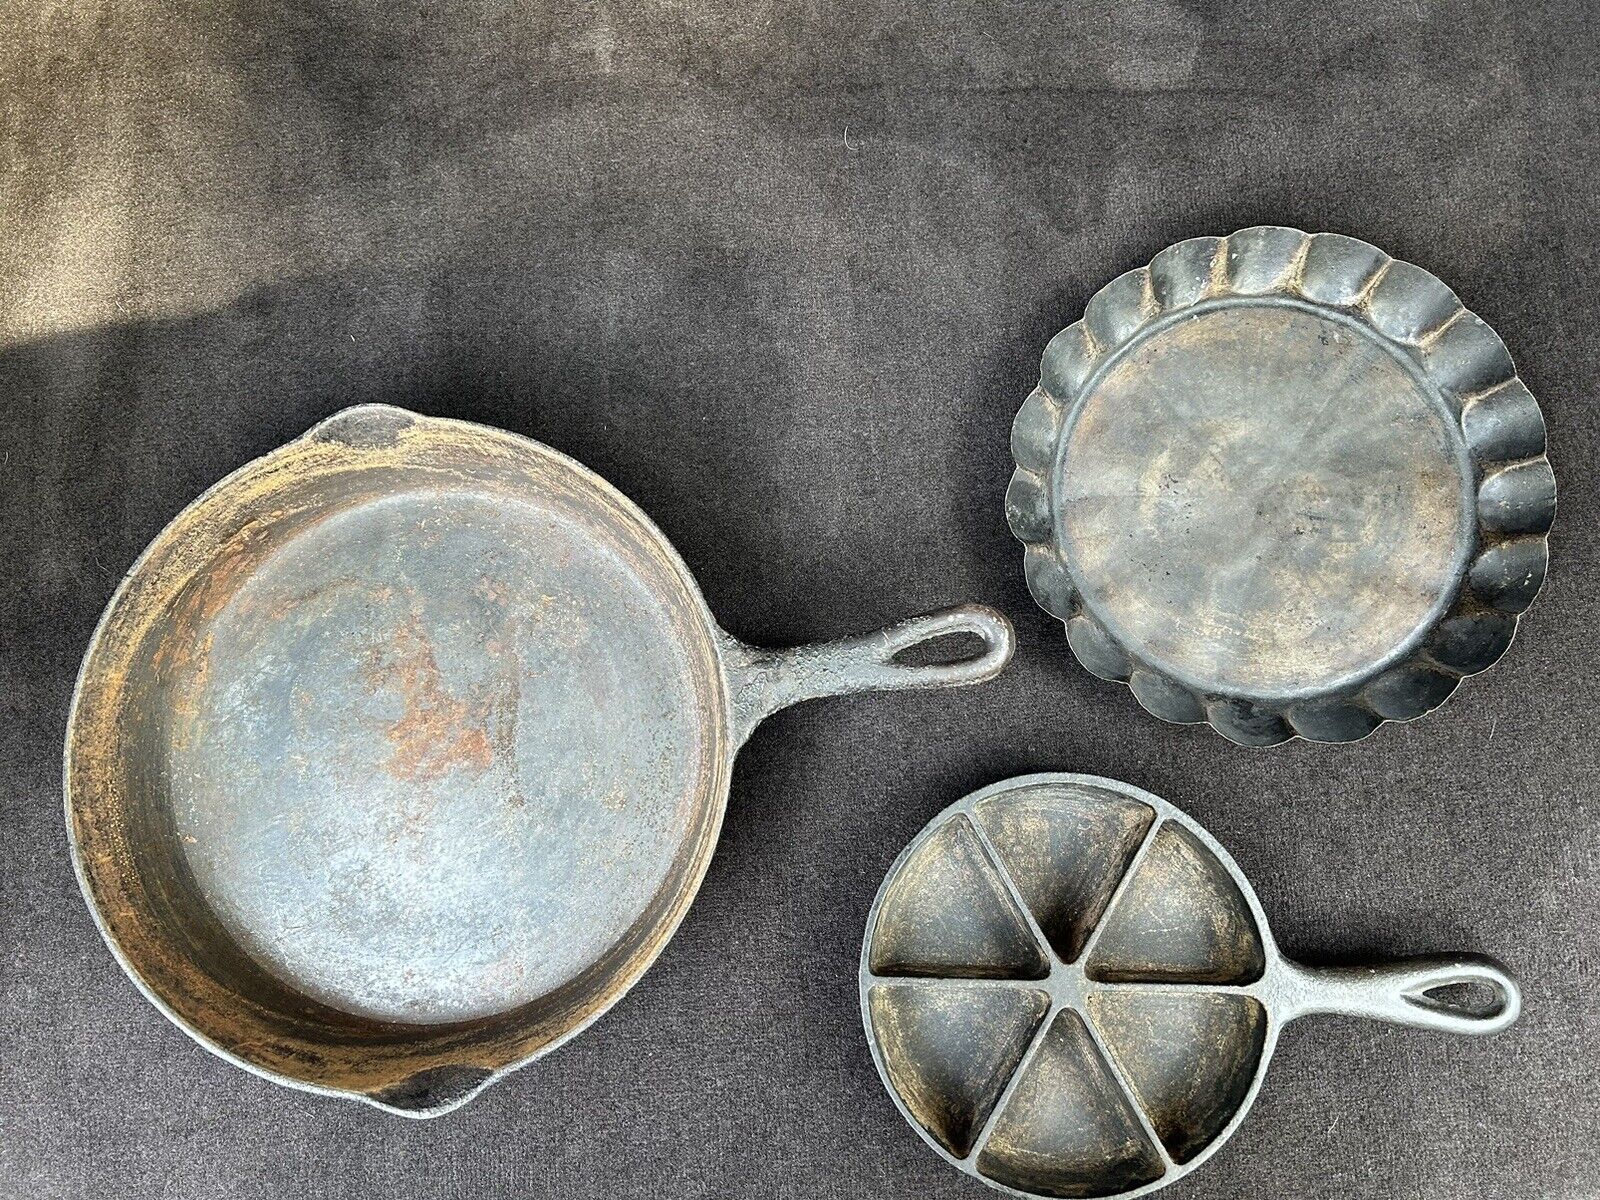 Vintage antique cast iron cookware